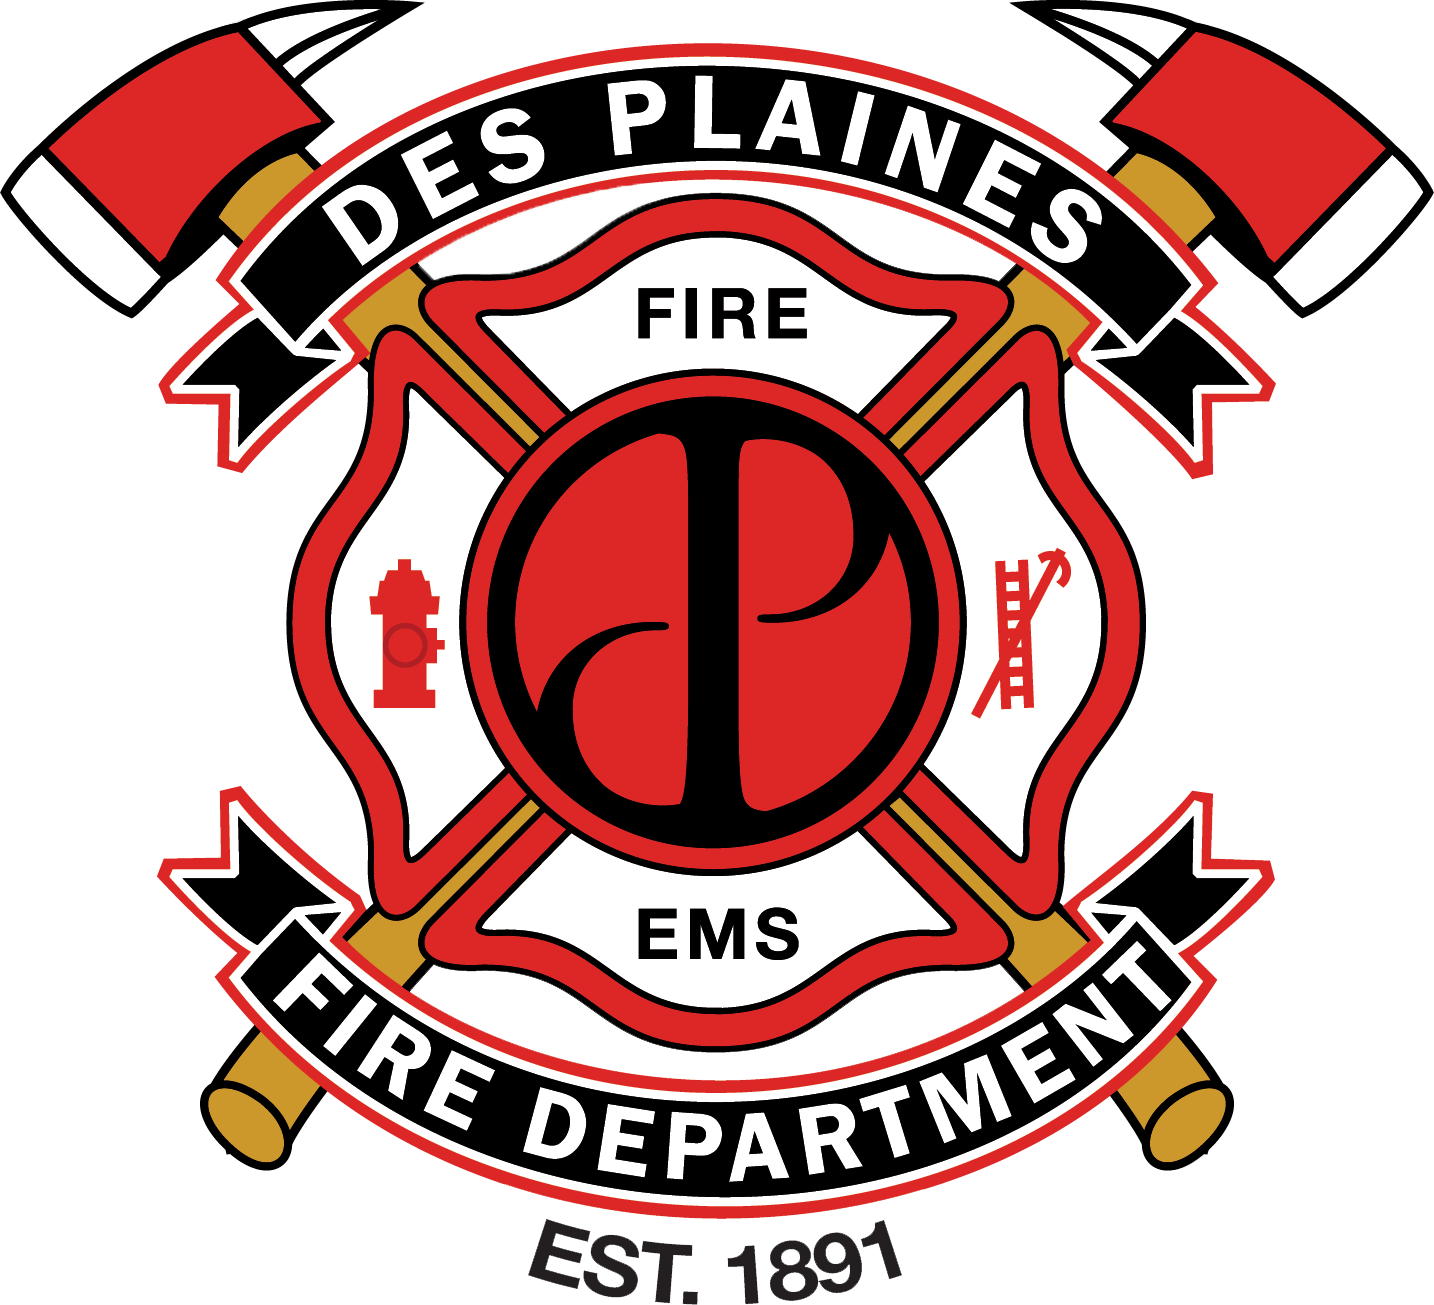 Des Plaines Fire Department Emblem